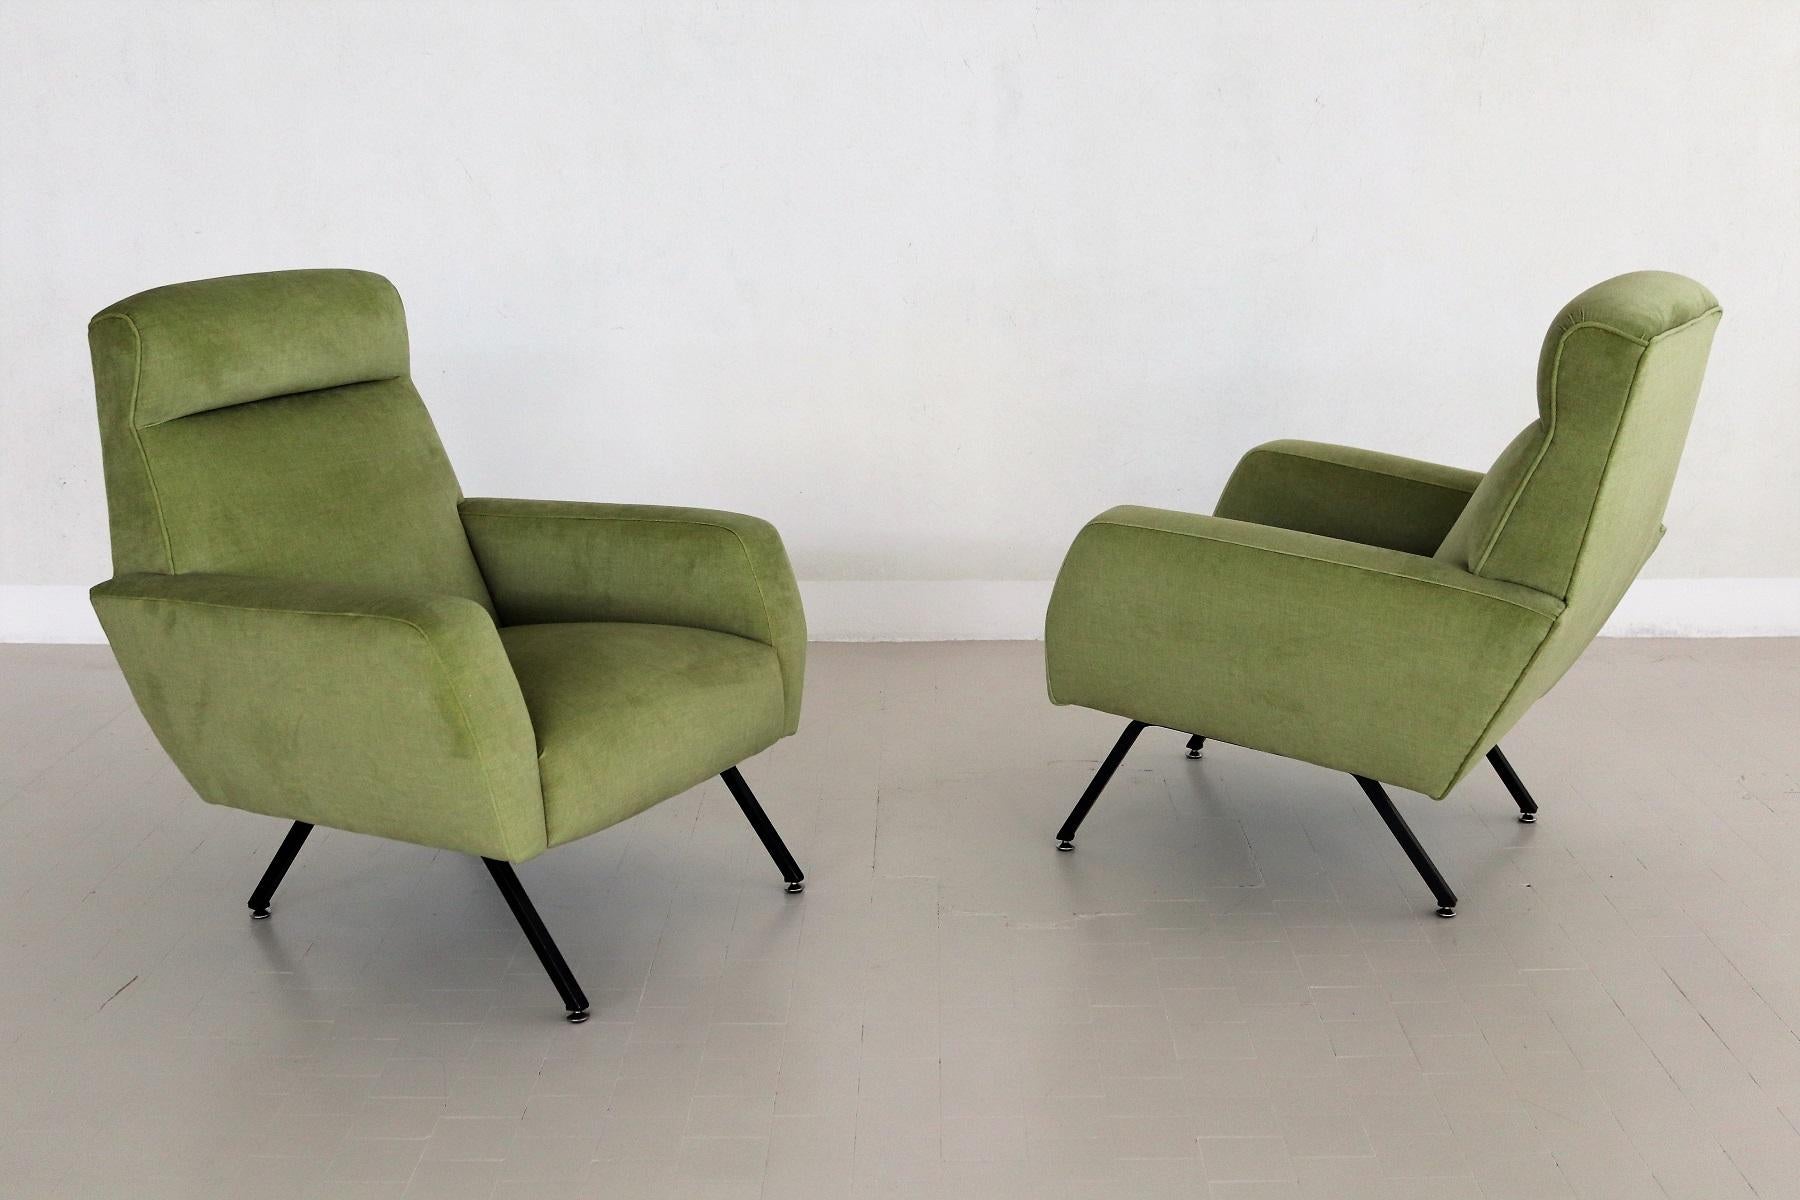 Italian Midcentury Armchairs Re-Upholstered in Green Velvet, 1960s For Sale 3